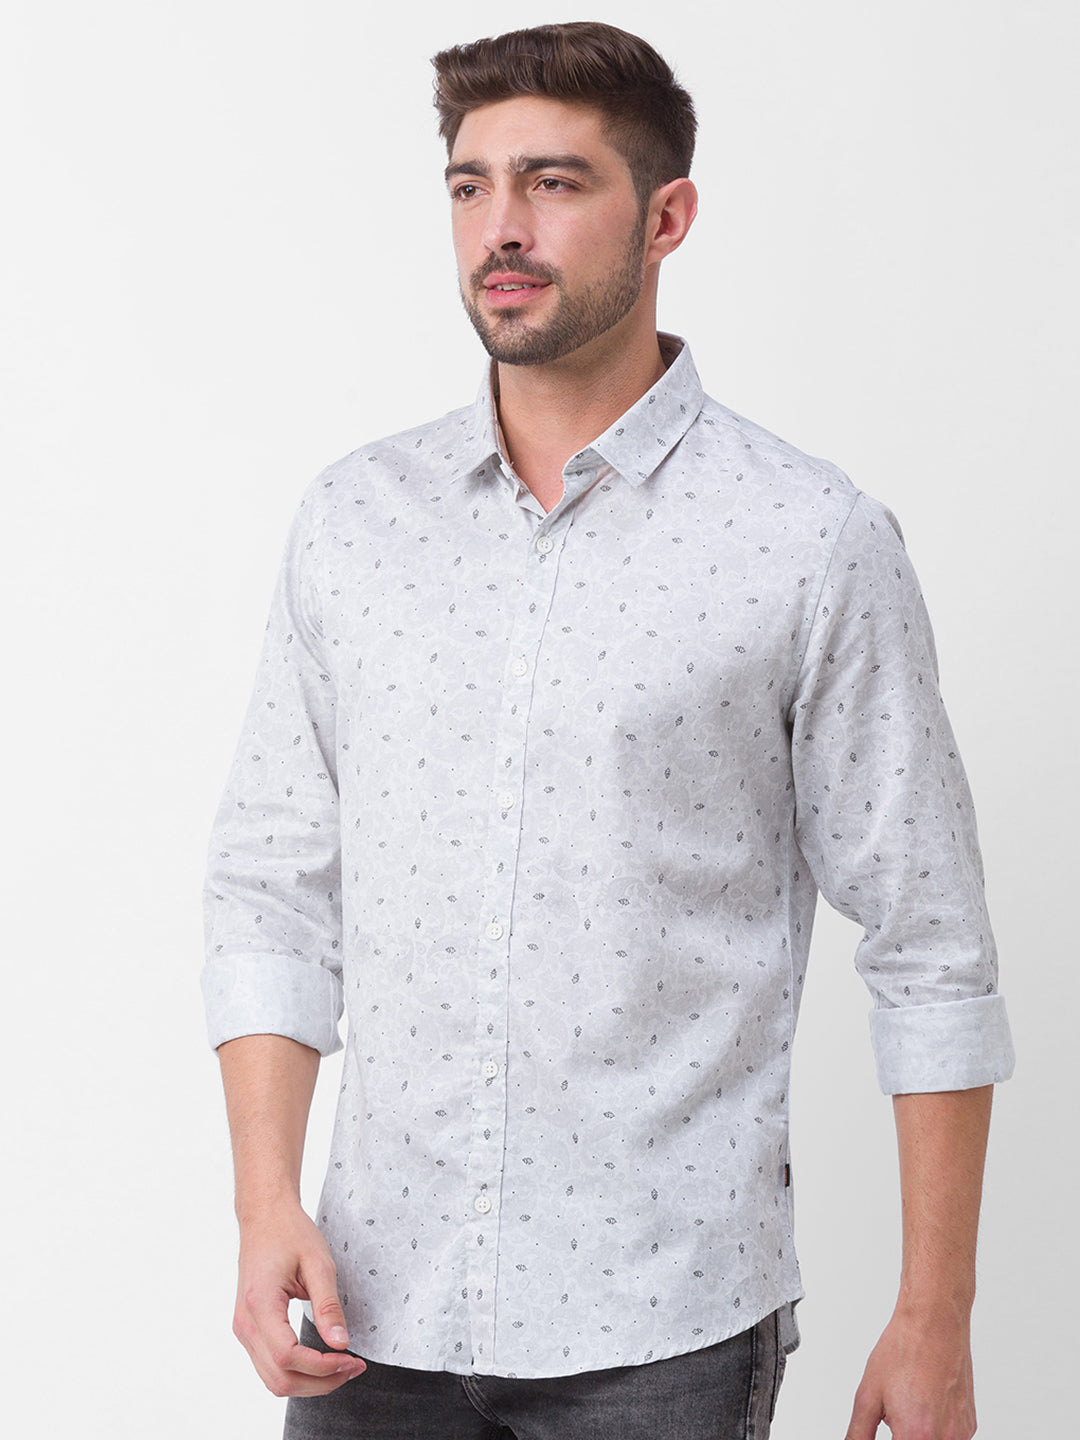 Spykar White Satin Full Sleeve Printed Shirt For Men